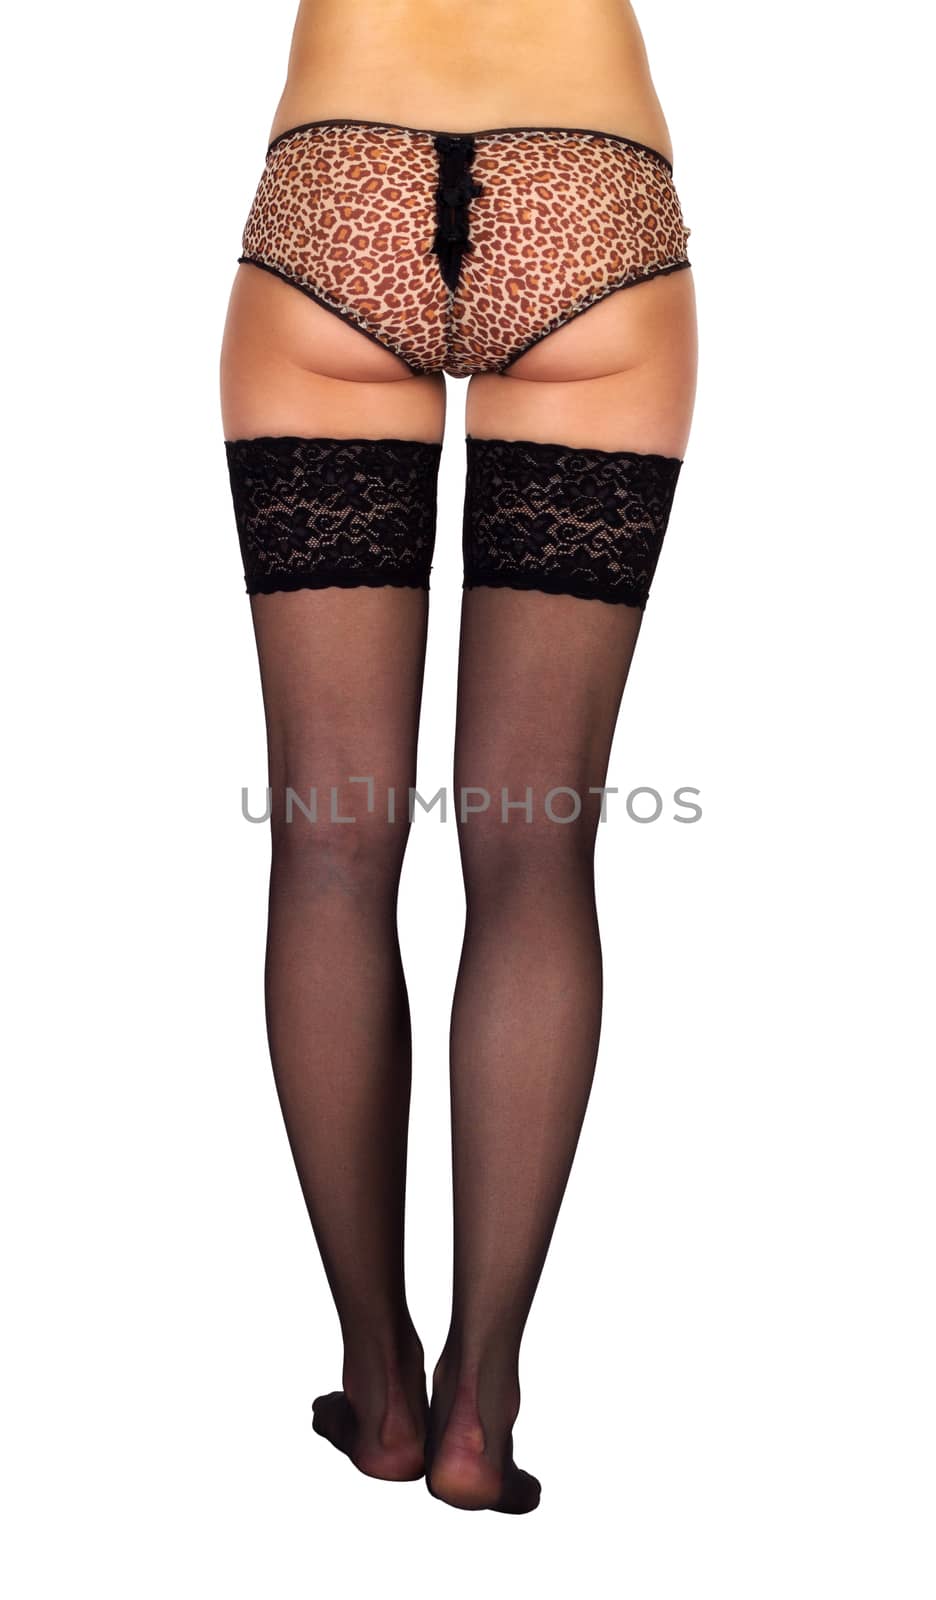 long slender female legs in black stockings isolated on white background